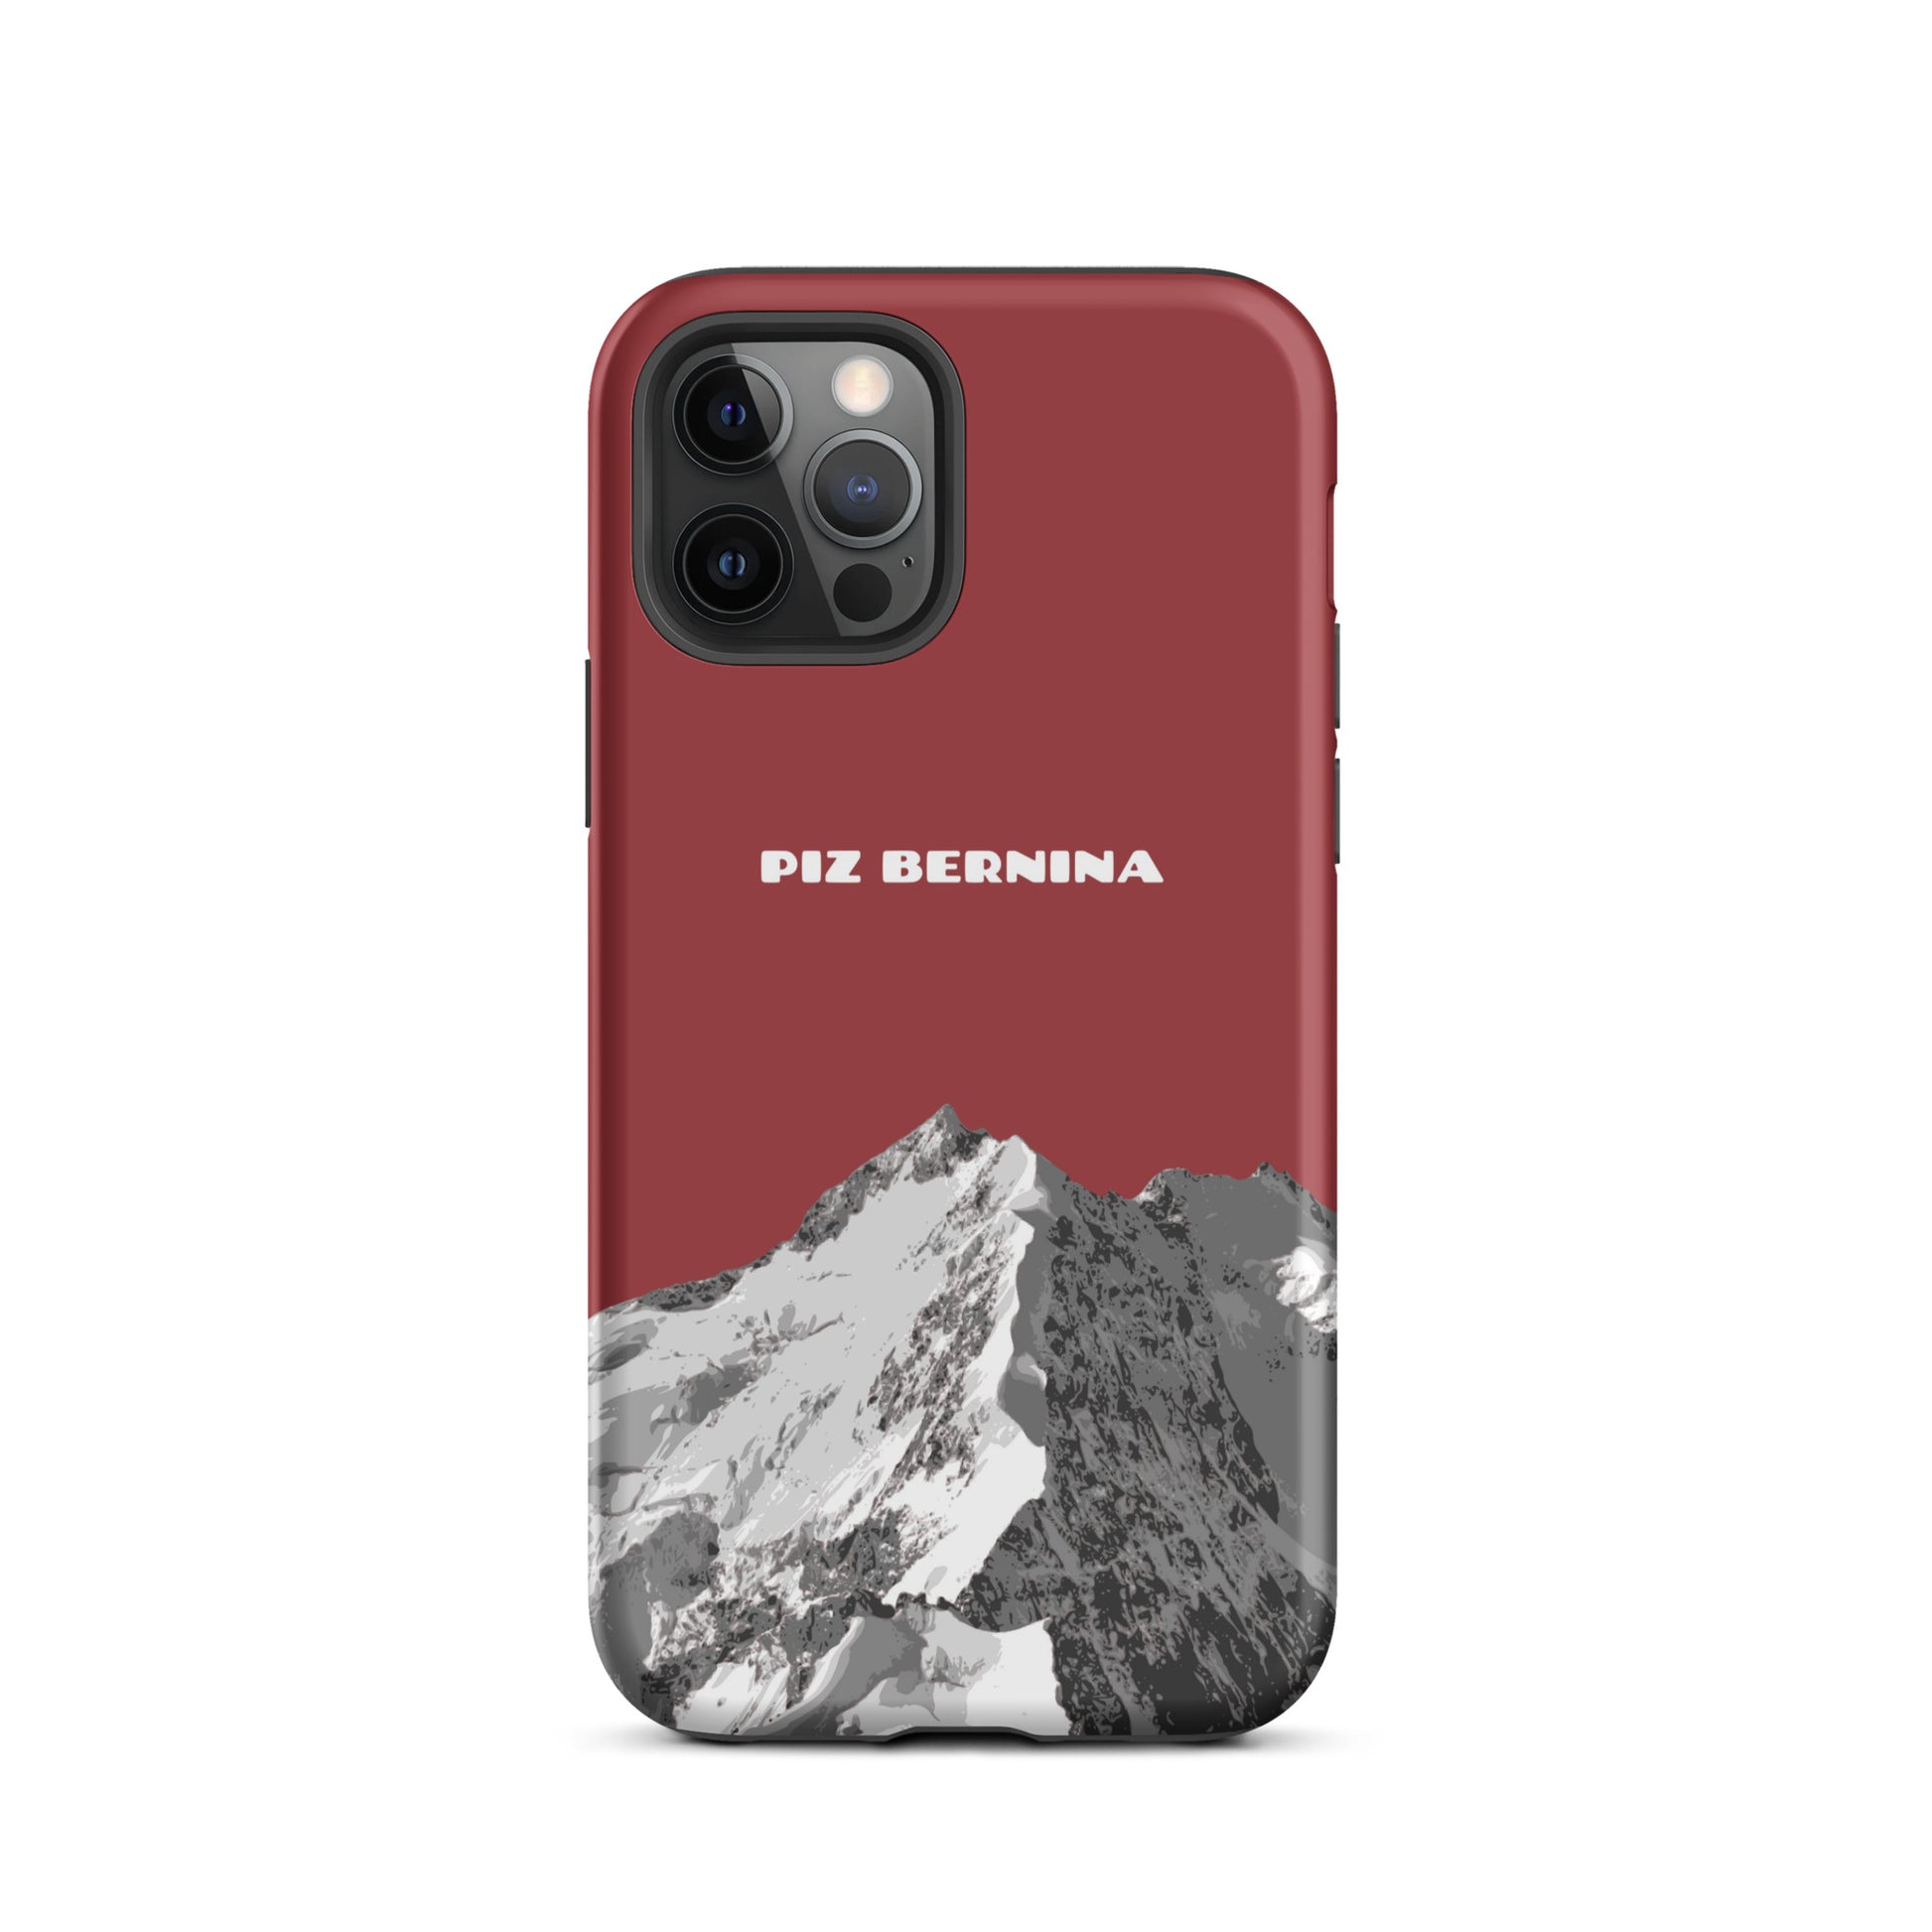 Hülle für das iPhone 12 Pro von Apple in der Farbe Rot, dass den Piz Bernina in Graubünden zeigt.